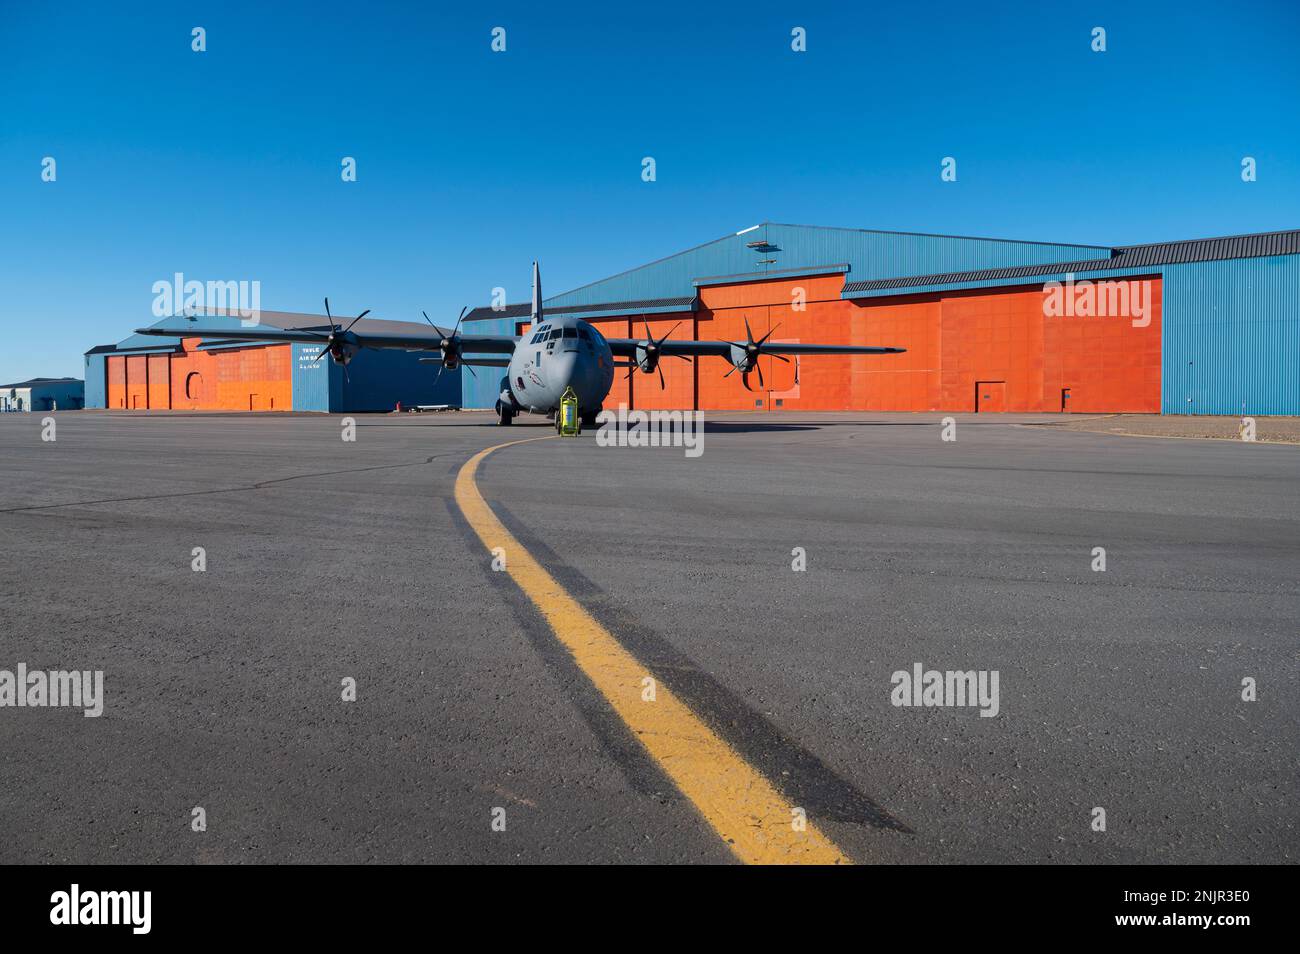 BASE AÉRIENNE DE THULE, Groenland – Un Hercules C-130 repose sur la ligne de vol de la base aérienne de Thule, Groenland, le 9 août 2022. Située à 750 milles au nord du cercle arctique, Thule AB dispose d'une piste de 10 000 pieds qui prend en charge plus de 3 000 vols américains et internationaux par année. Les contrôleurs de la circulation aérienne et les représentants des agents de négociation des contrats de l'escadron de soutien 821st veillent à ce que la ligne de vol demeure opérationnelle toute l'année. Banque D'Images